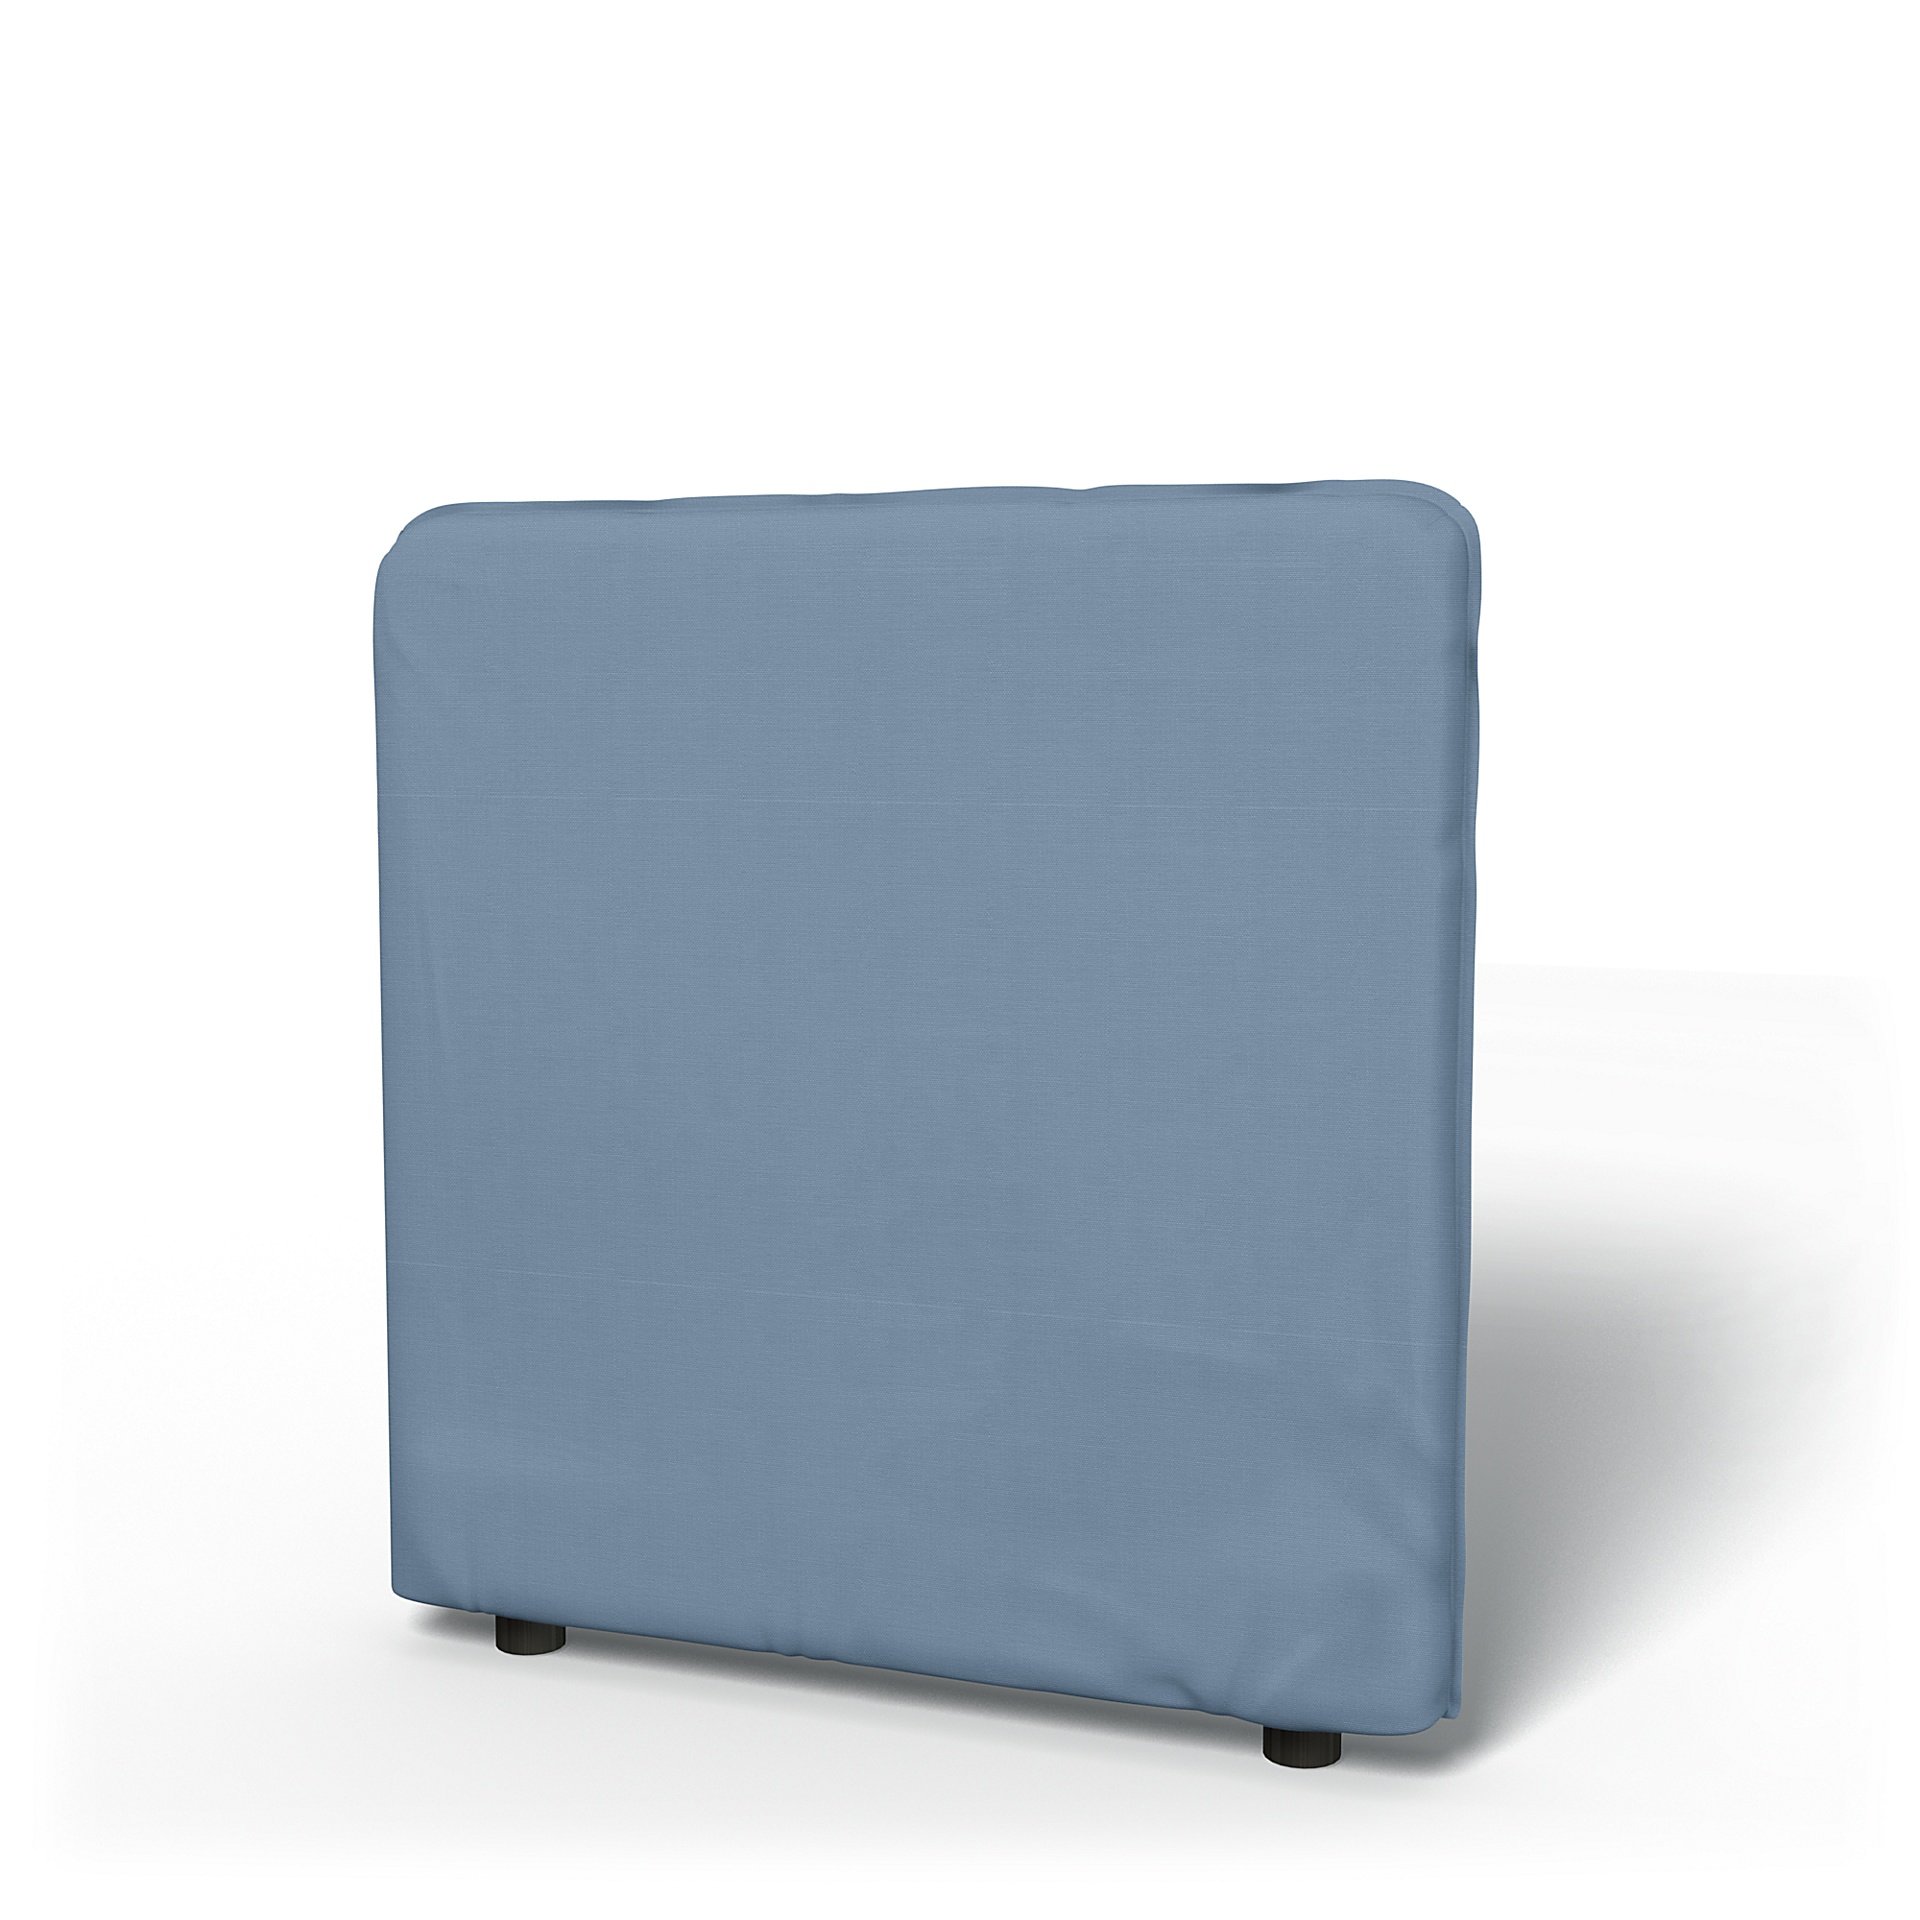 IKEA - Vallentuna Low Backrest Cover 80x80cm 32x32in, Dusty Blue, Cotton - Bemz